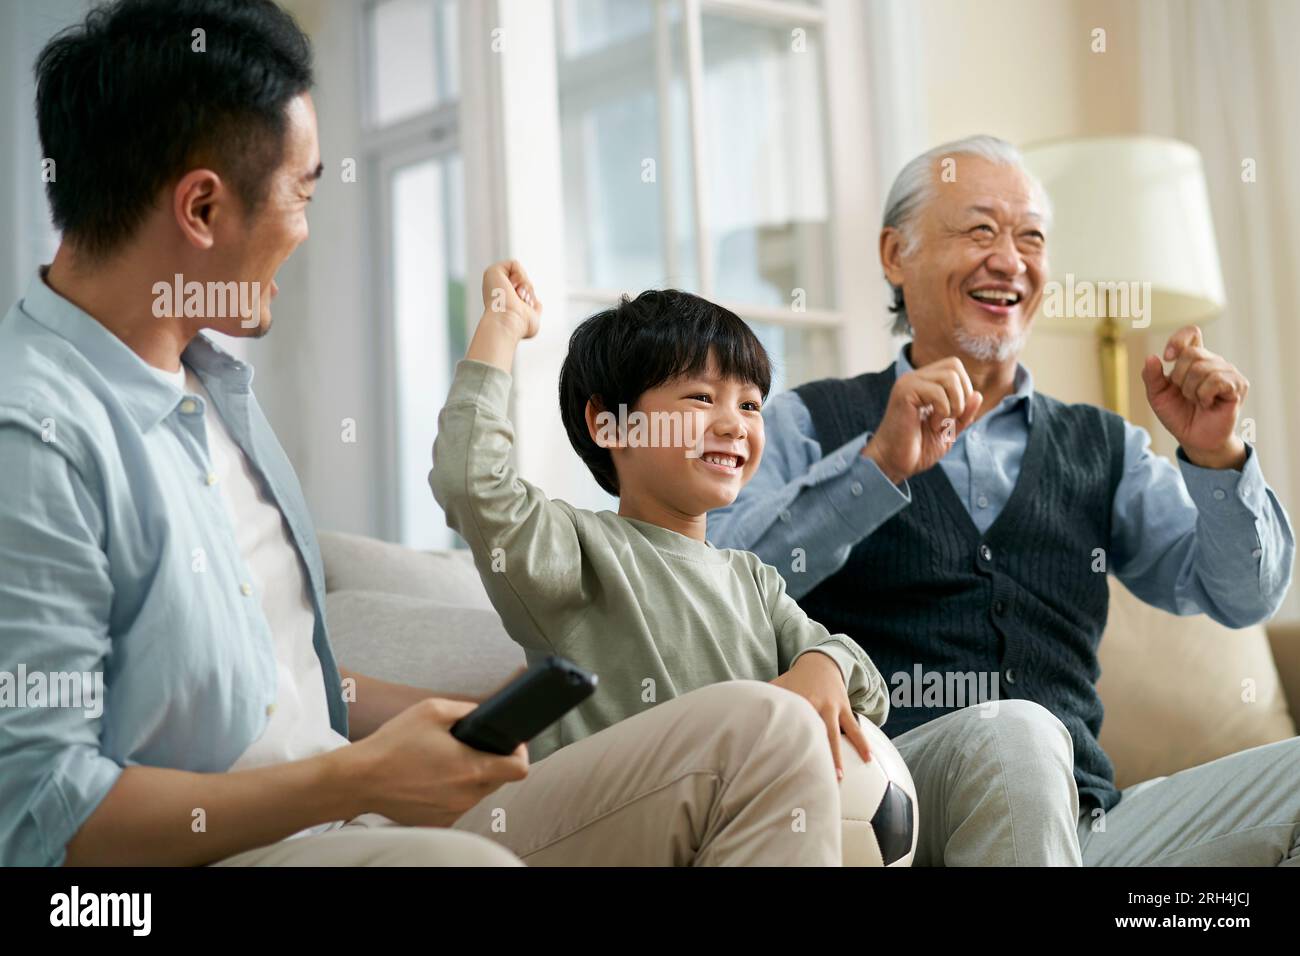 asiatischer Vater Großvater, der zu Hause auf der Couch sitzt und das Tor und den Sieg feiert, während er zusammen im Fernsehen live die Übertragung des Fußballspiels ansieht Stockfoto